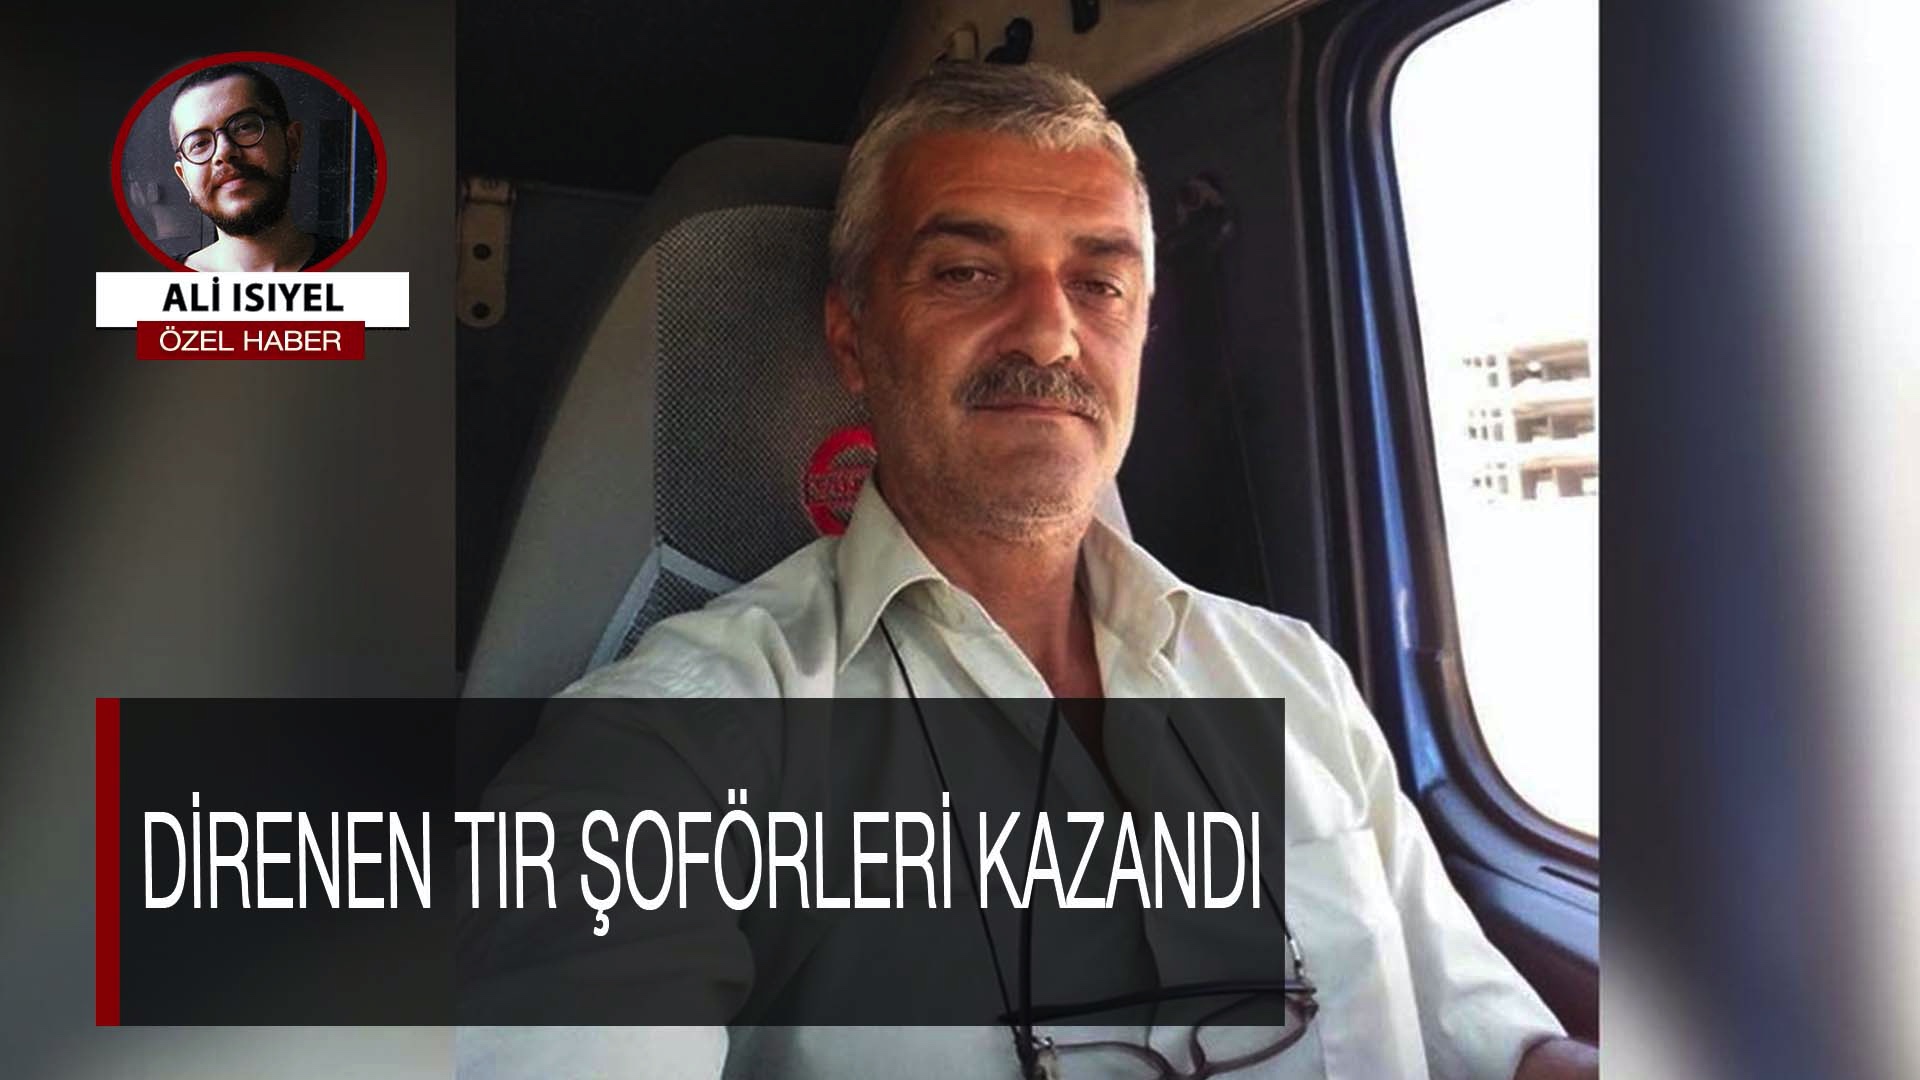 Direnen TIR şoförleri kazandı: Direnişi örgütleyen İsmail Çakar Halk TV'ye konuştu